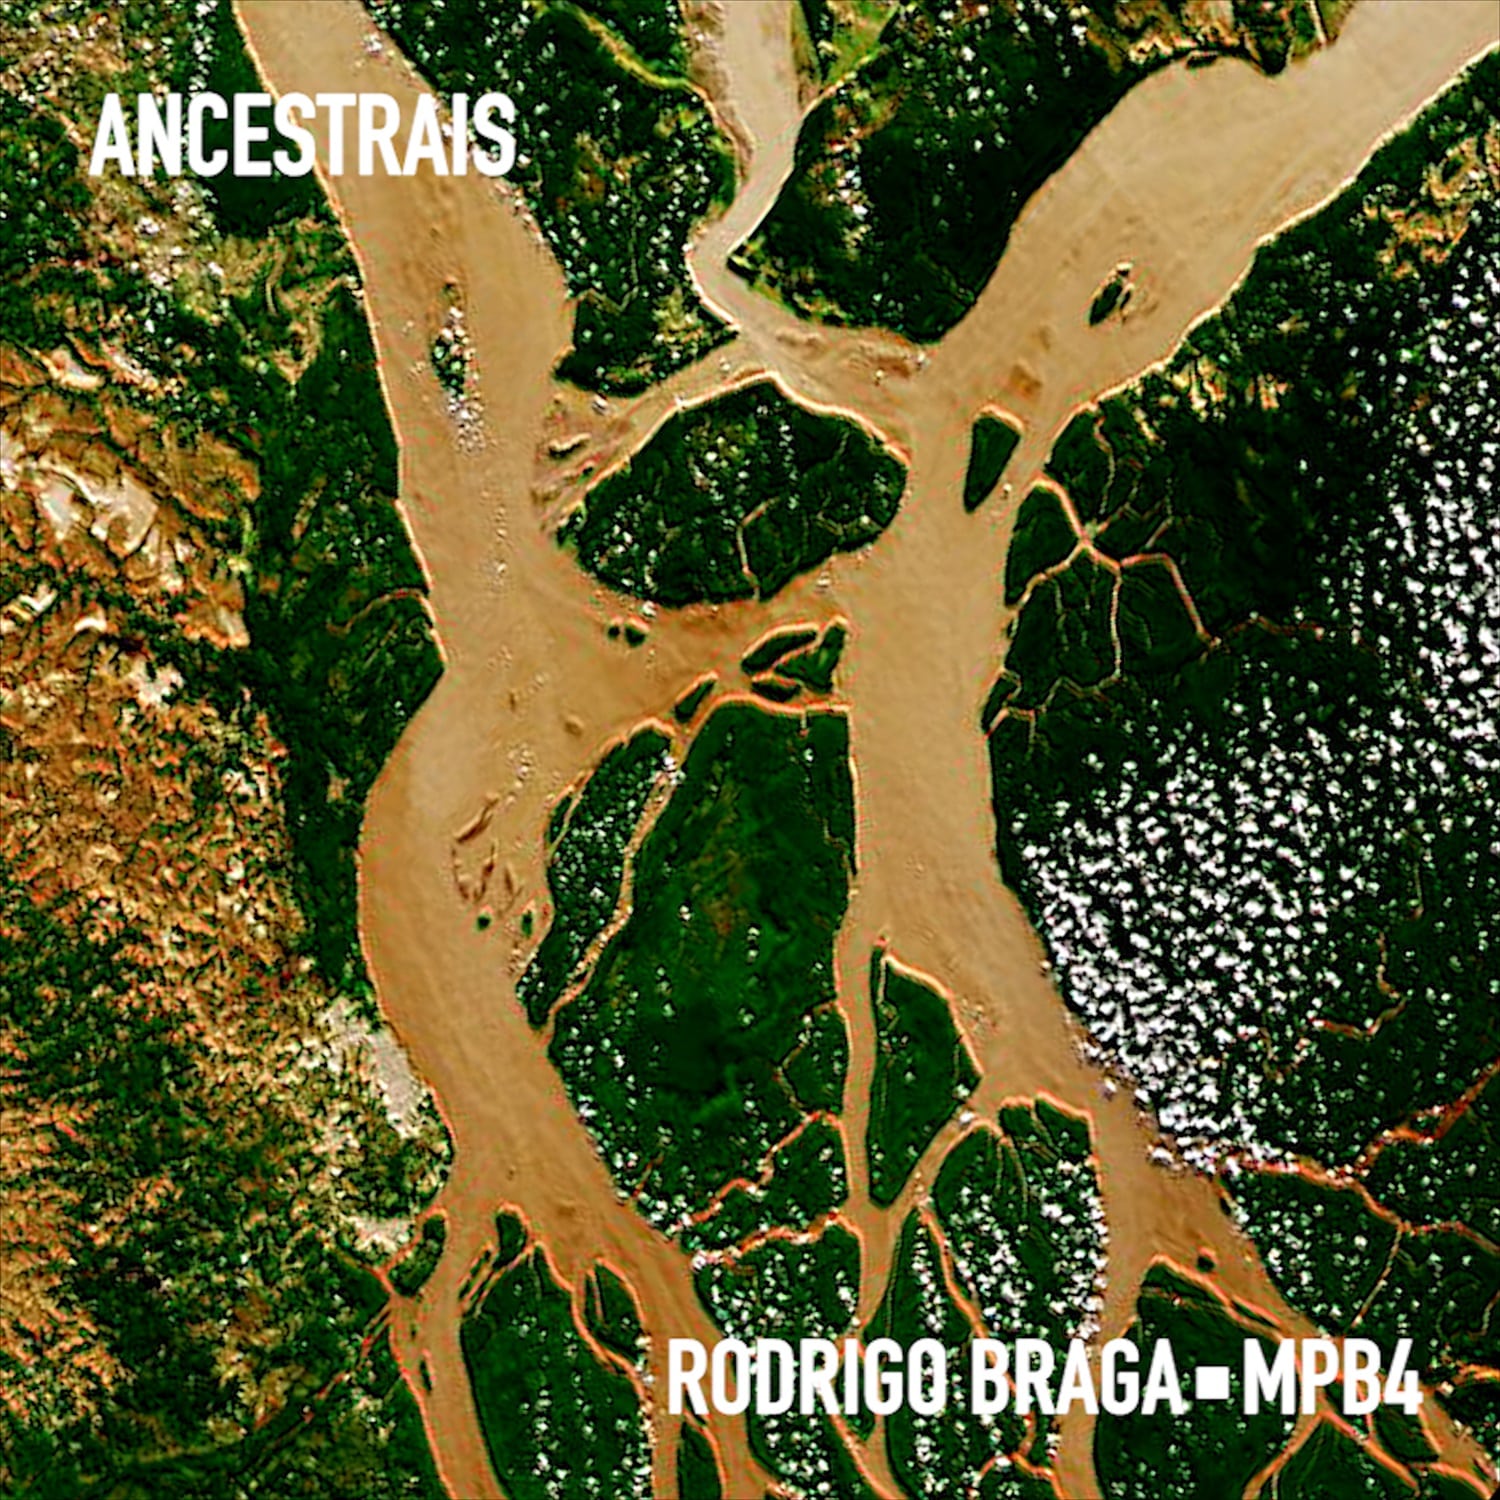 revistaprosaversoearte.com - Rodrigo Braga lança 'Ancestrais', com a participação do grupo MPB4